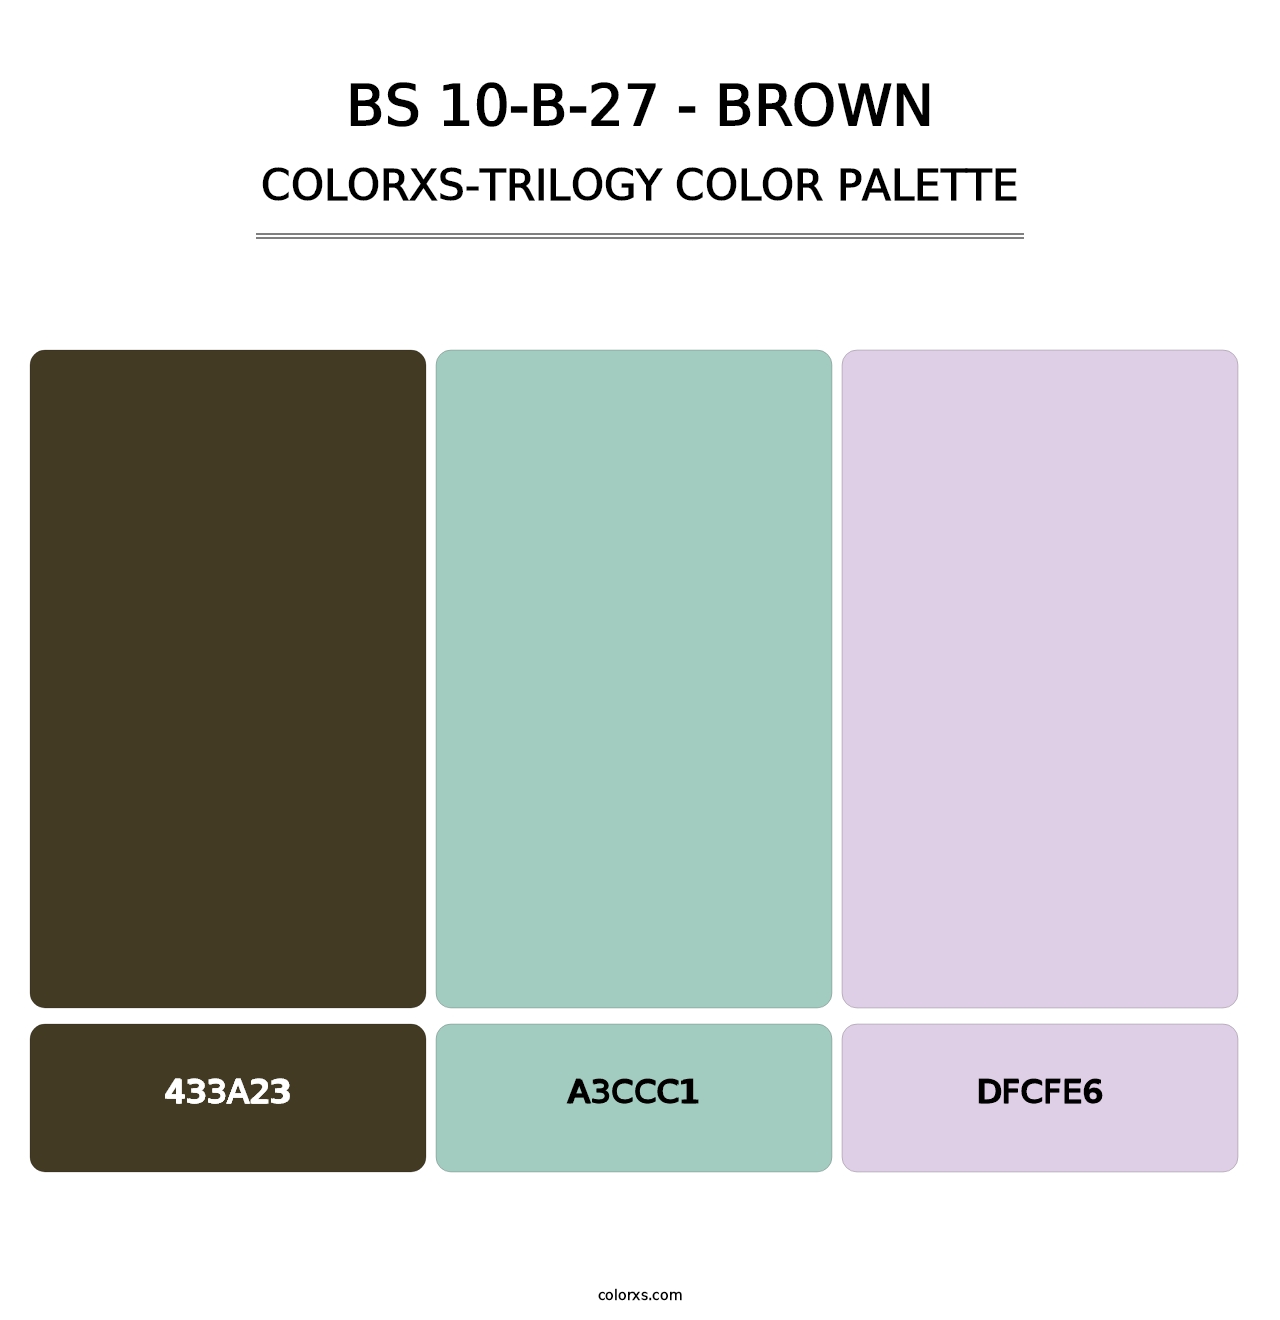 BS 10-B-27 - Brown - Colorxs Trilogy Palette